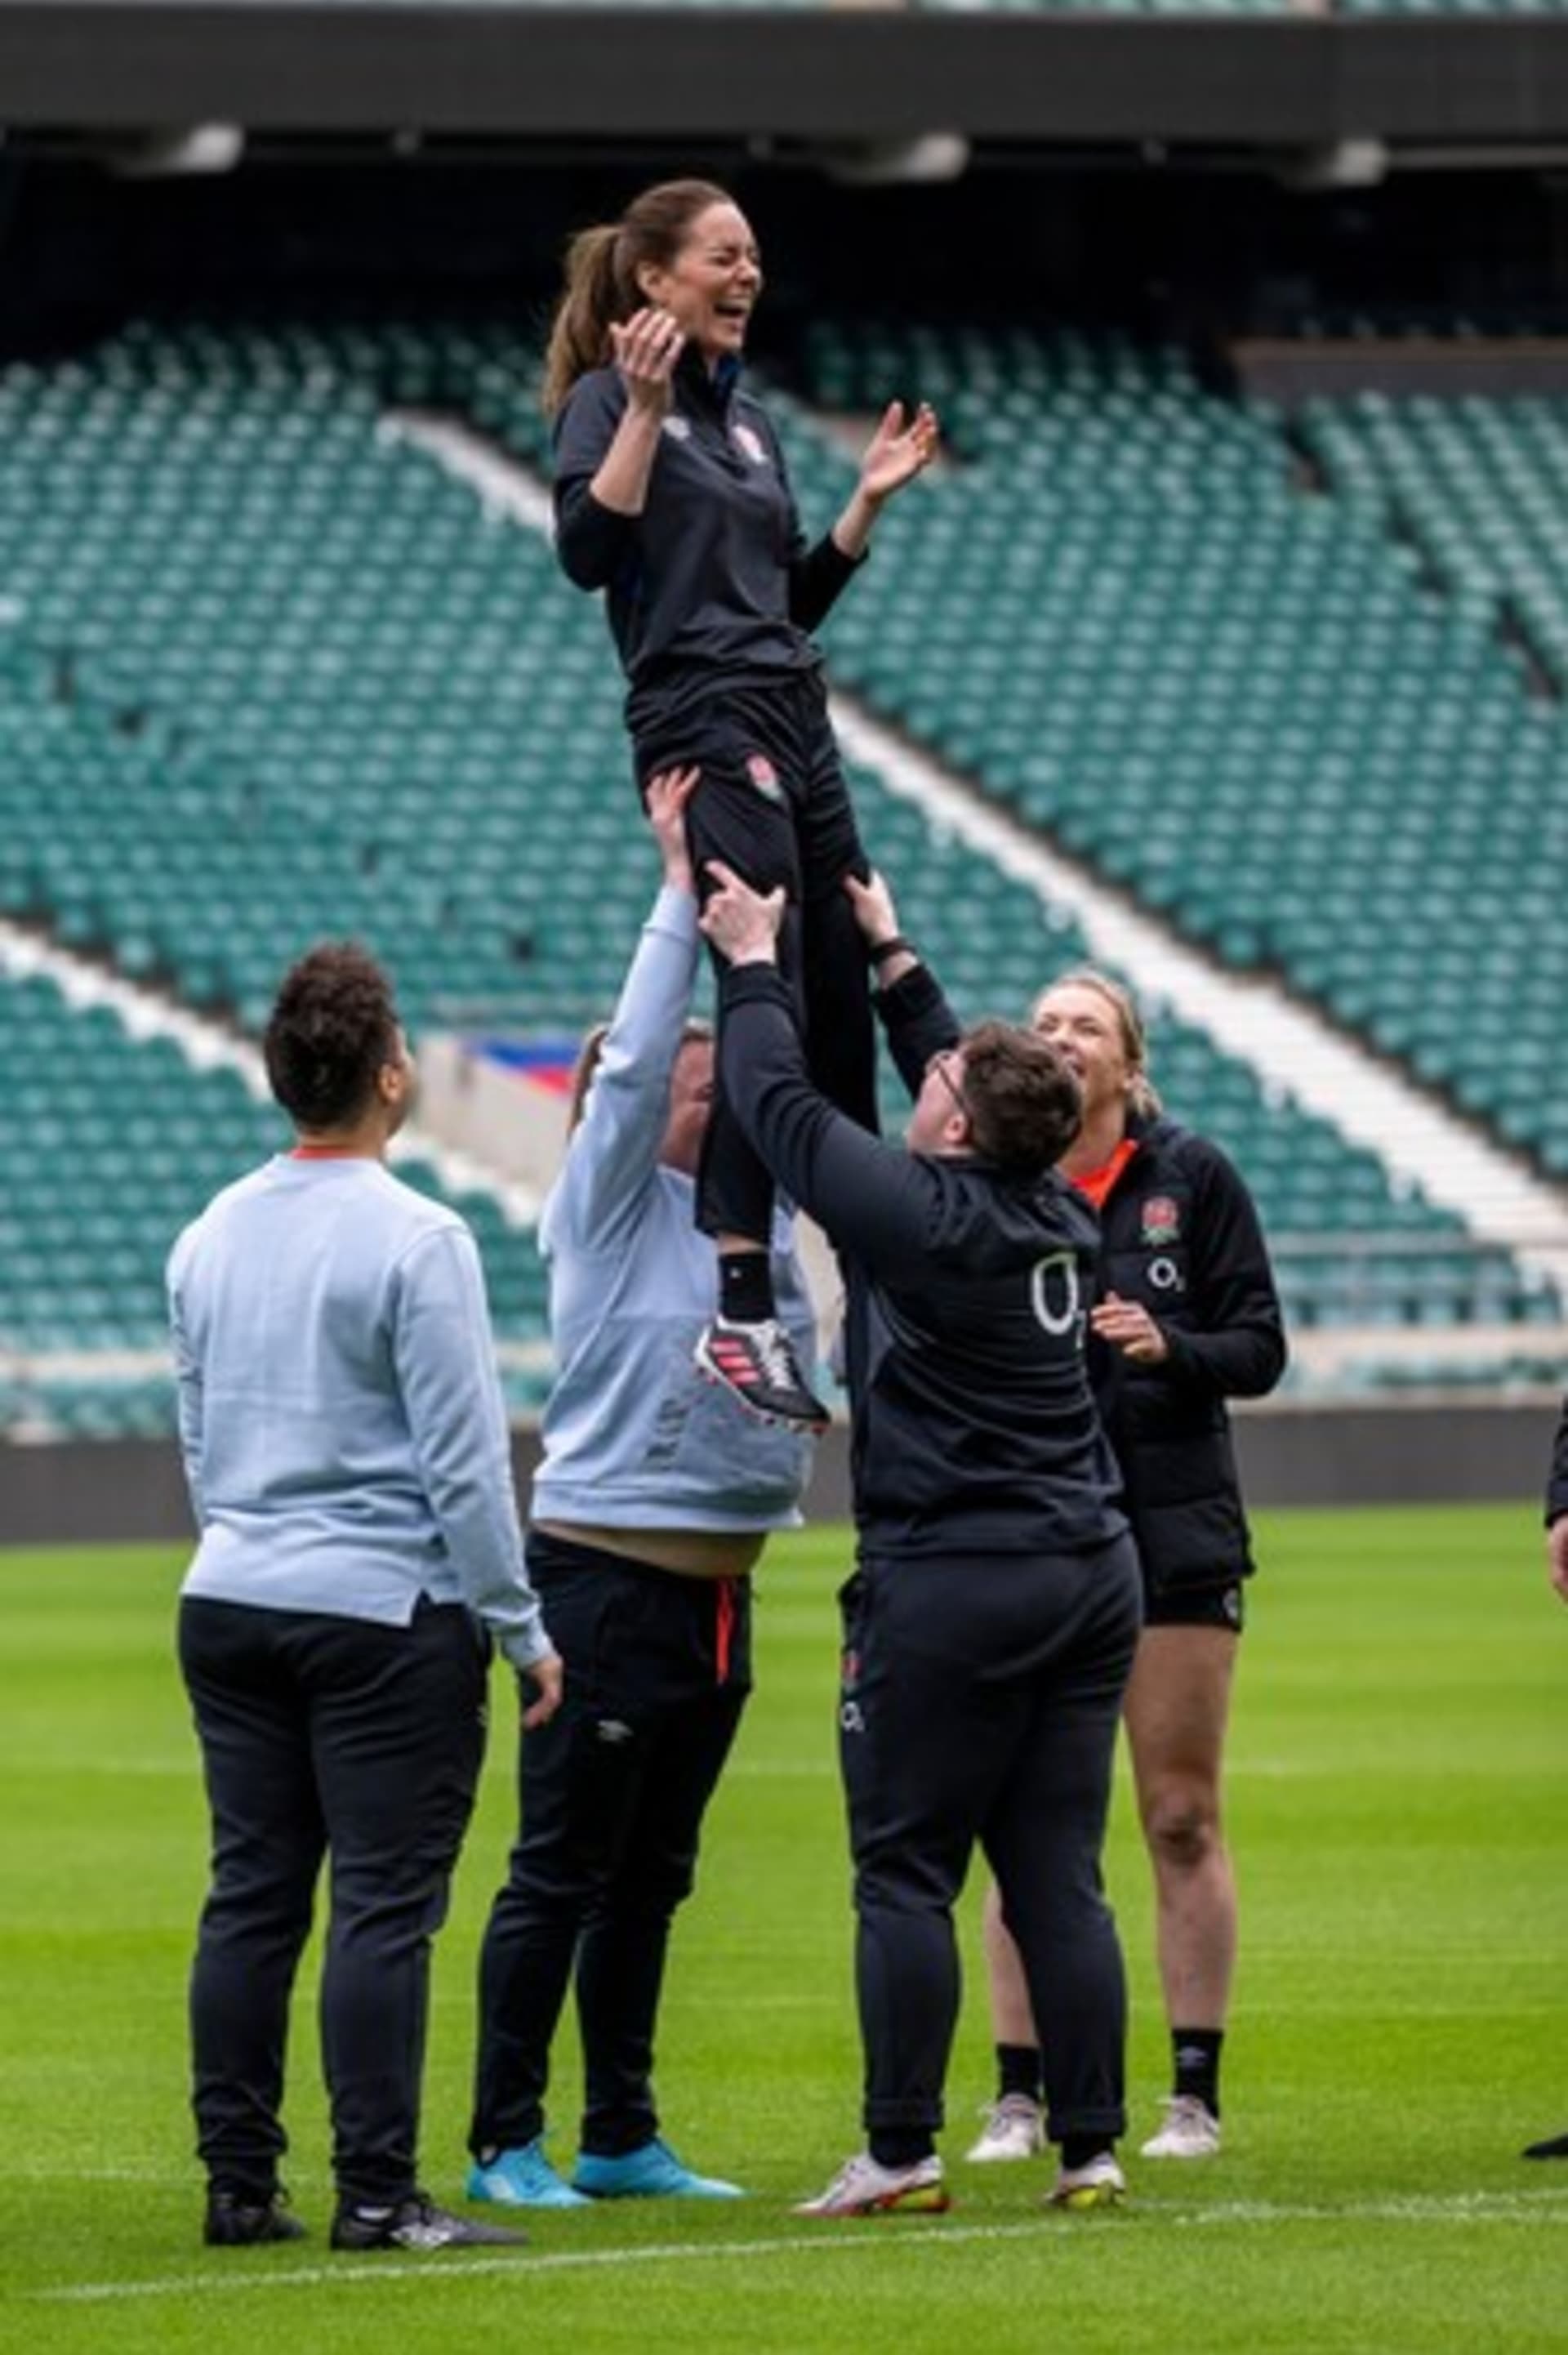 Kate Middletonová předvedla své sportovní dovednosti na tréninku na stadionu Twickenham v Londýně.